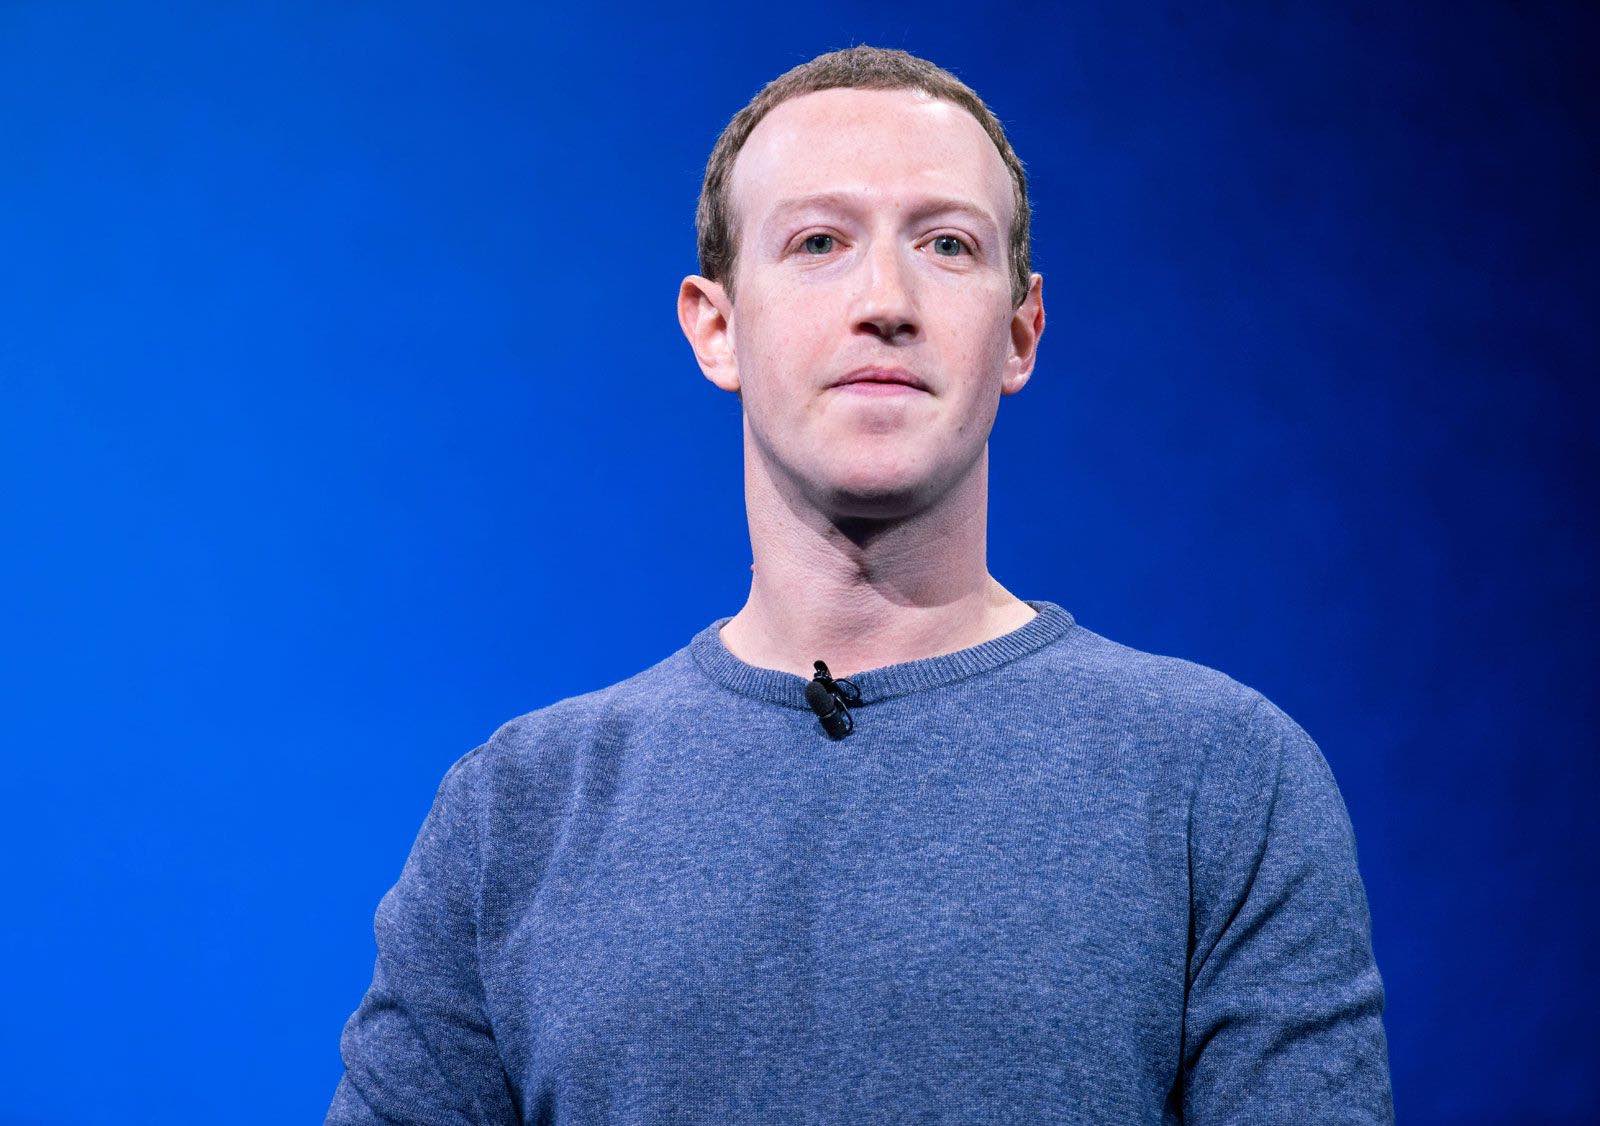 Mark Zuckerberg’s High-Adrenaline Hobbies is a Business Risk